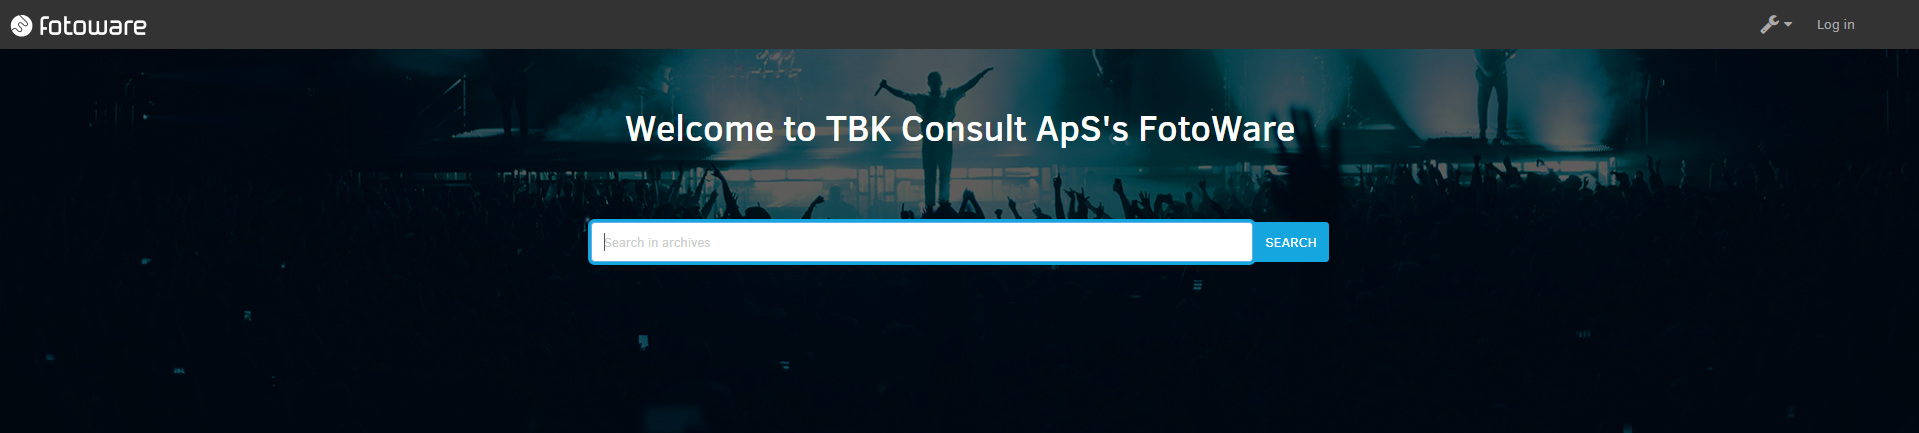 TBK Consult